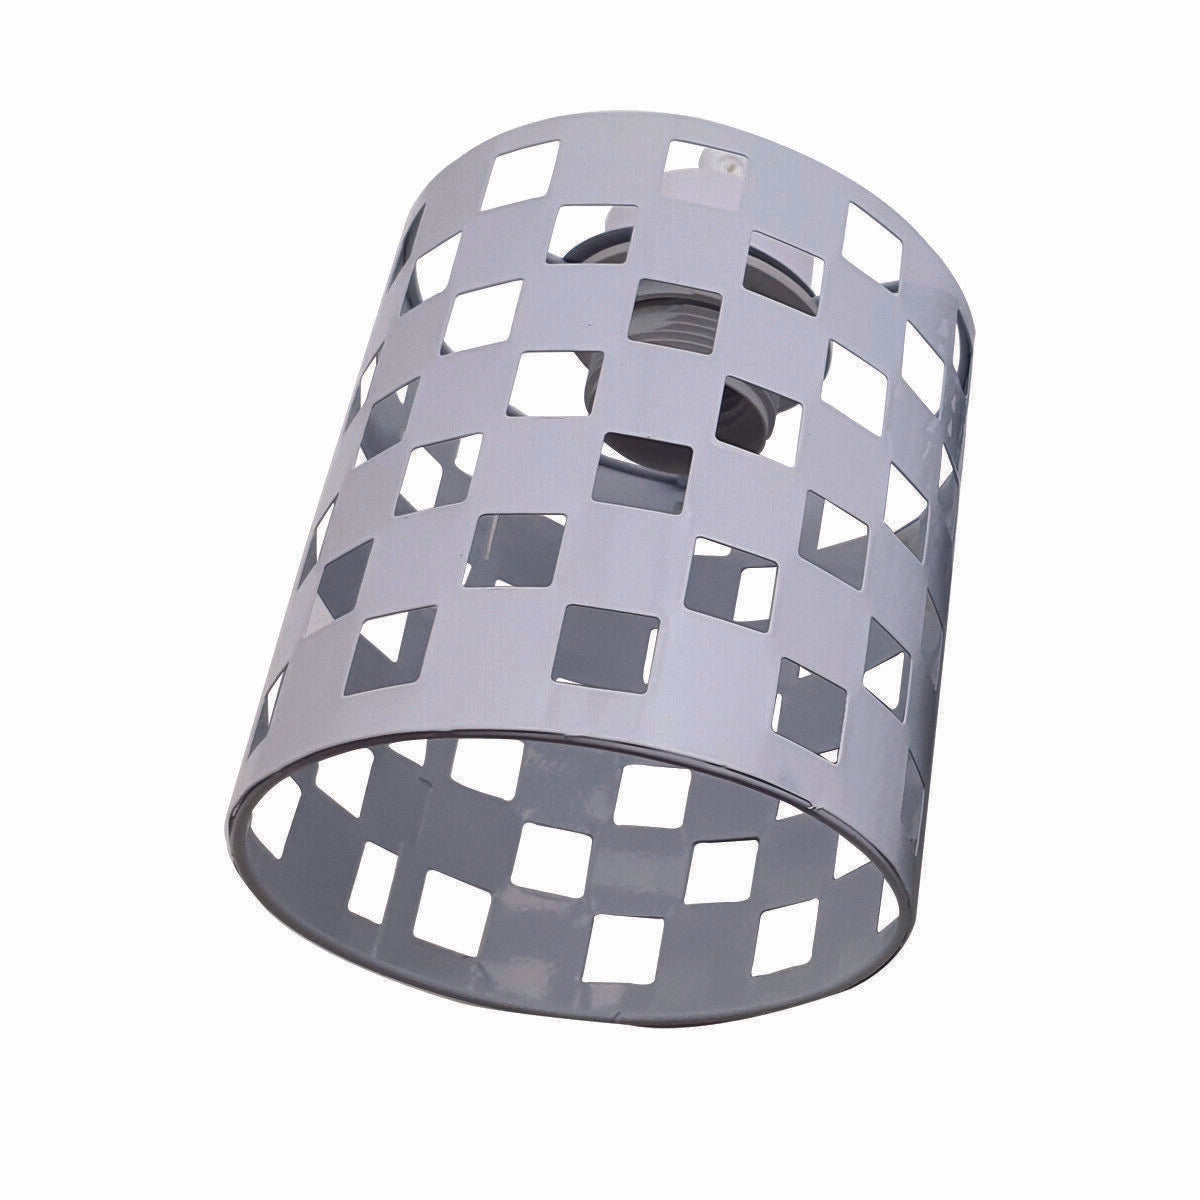 Industrieller Retro Hängelampenschirm tonnenförmiger Metall Deckenlampenschirm im Loft-Stil~2687